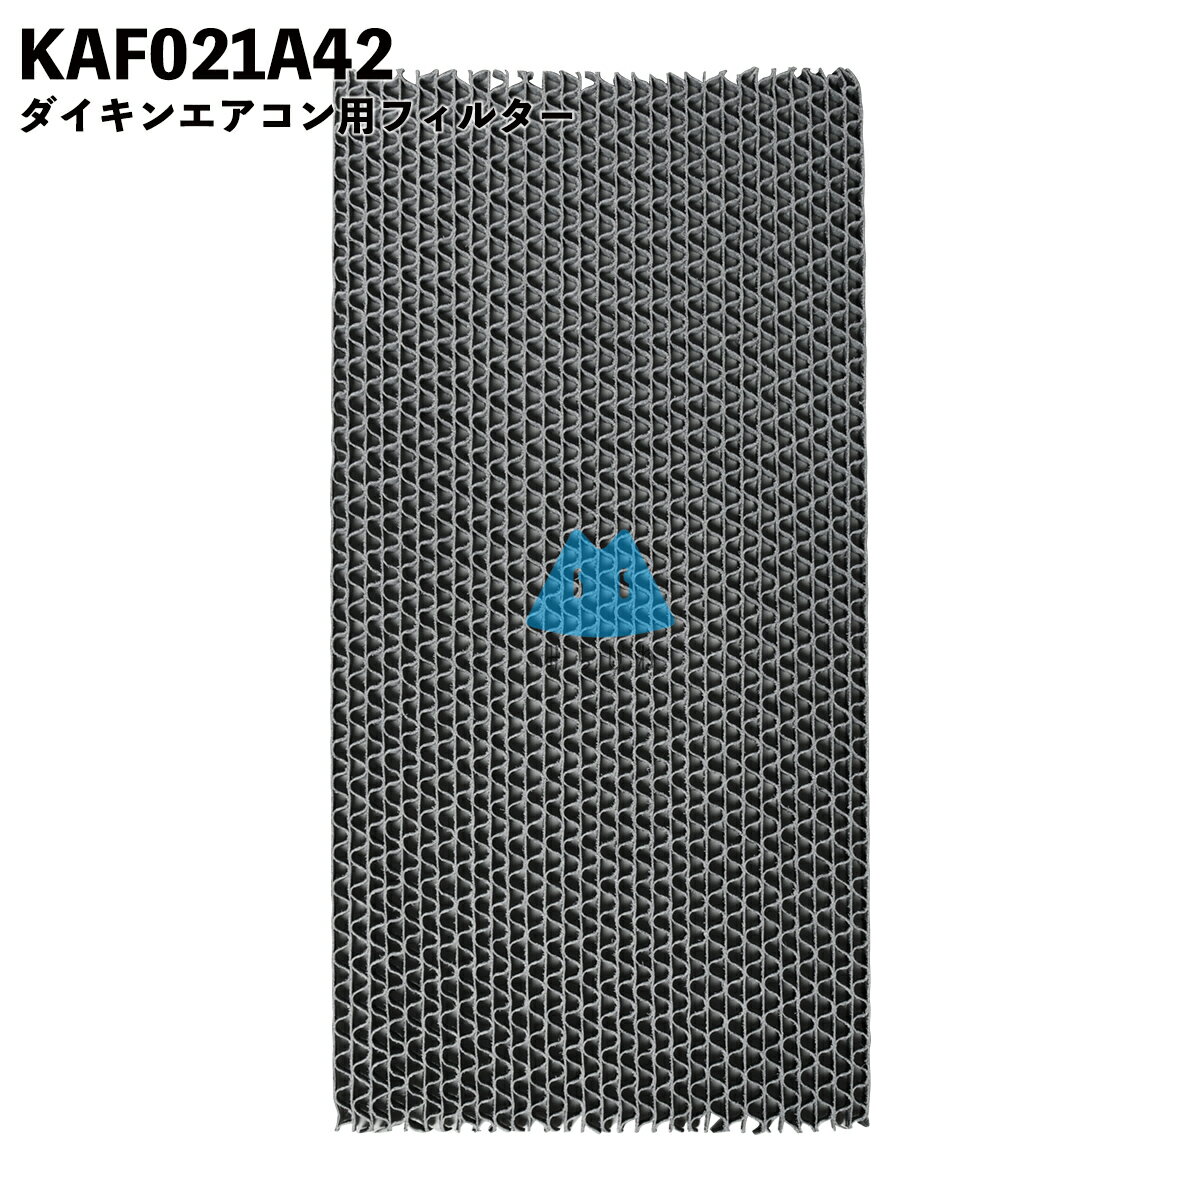 ダイキン 空気清浄機 フィルター KAF021A42 エアコン 集塵 脱臭フィルター 99A0484 PM2.5 花粉